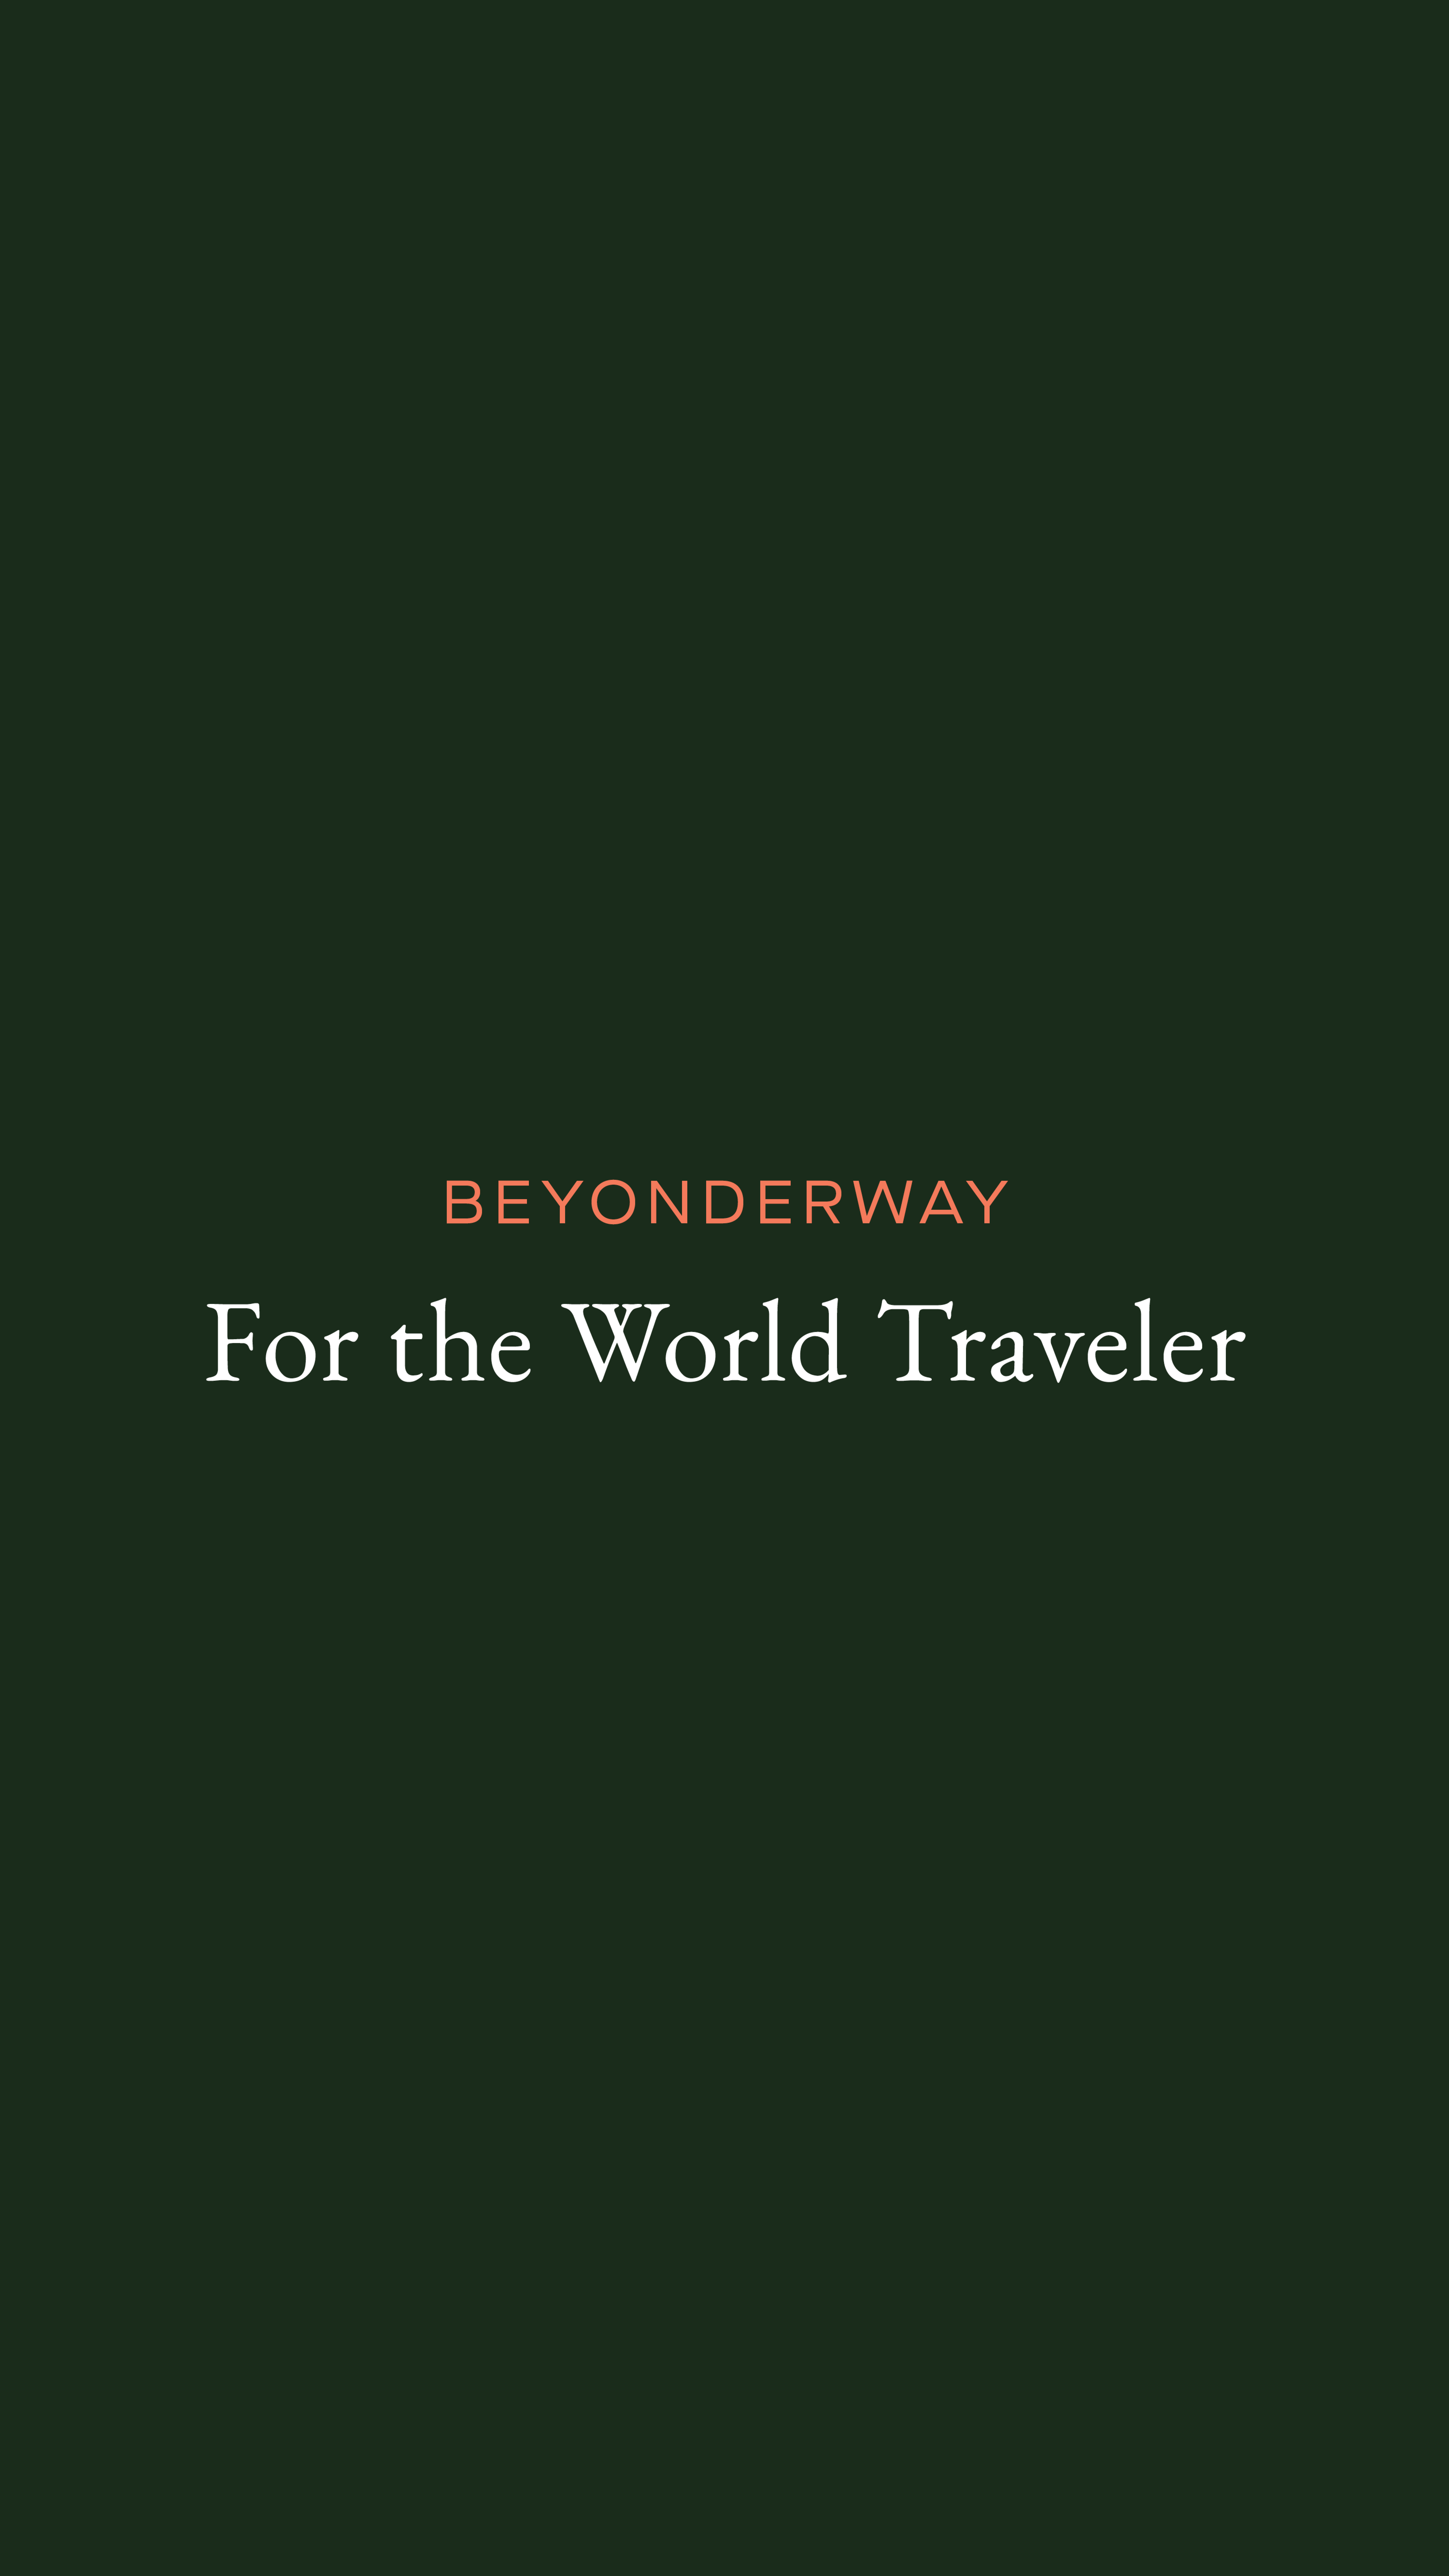 For the world traveler - reel